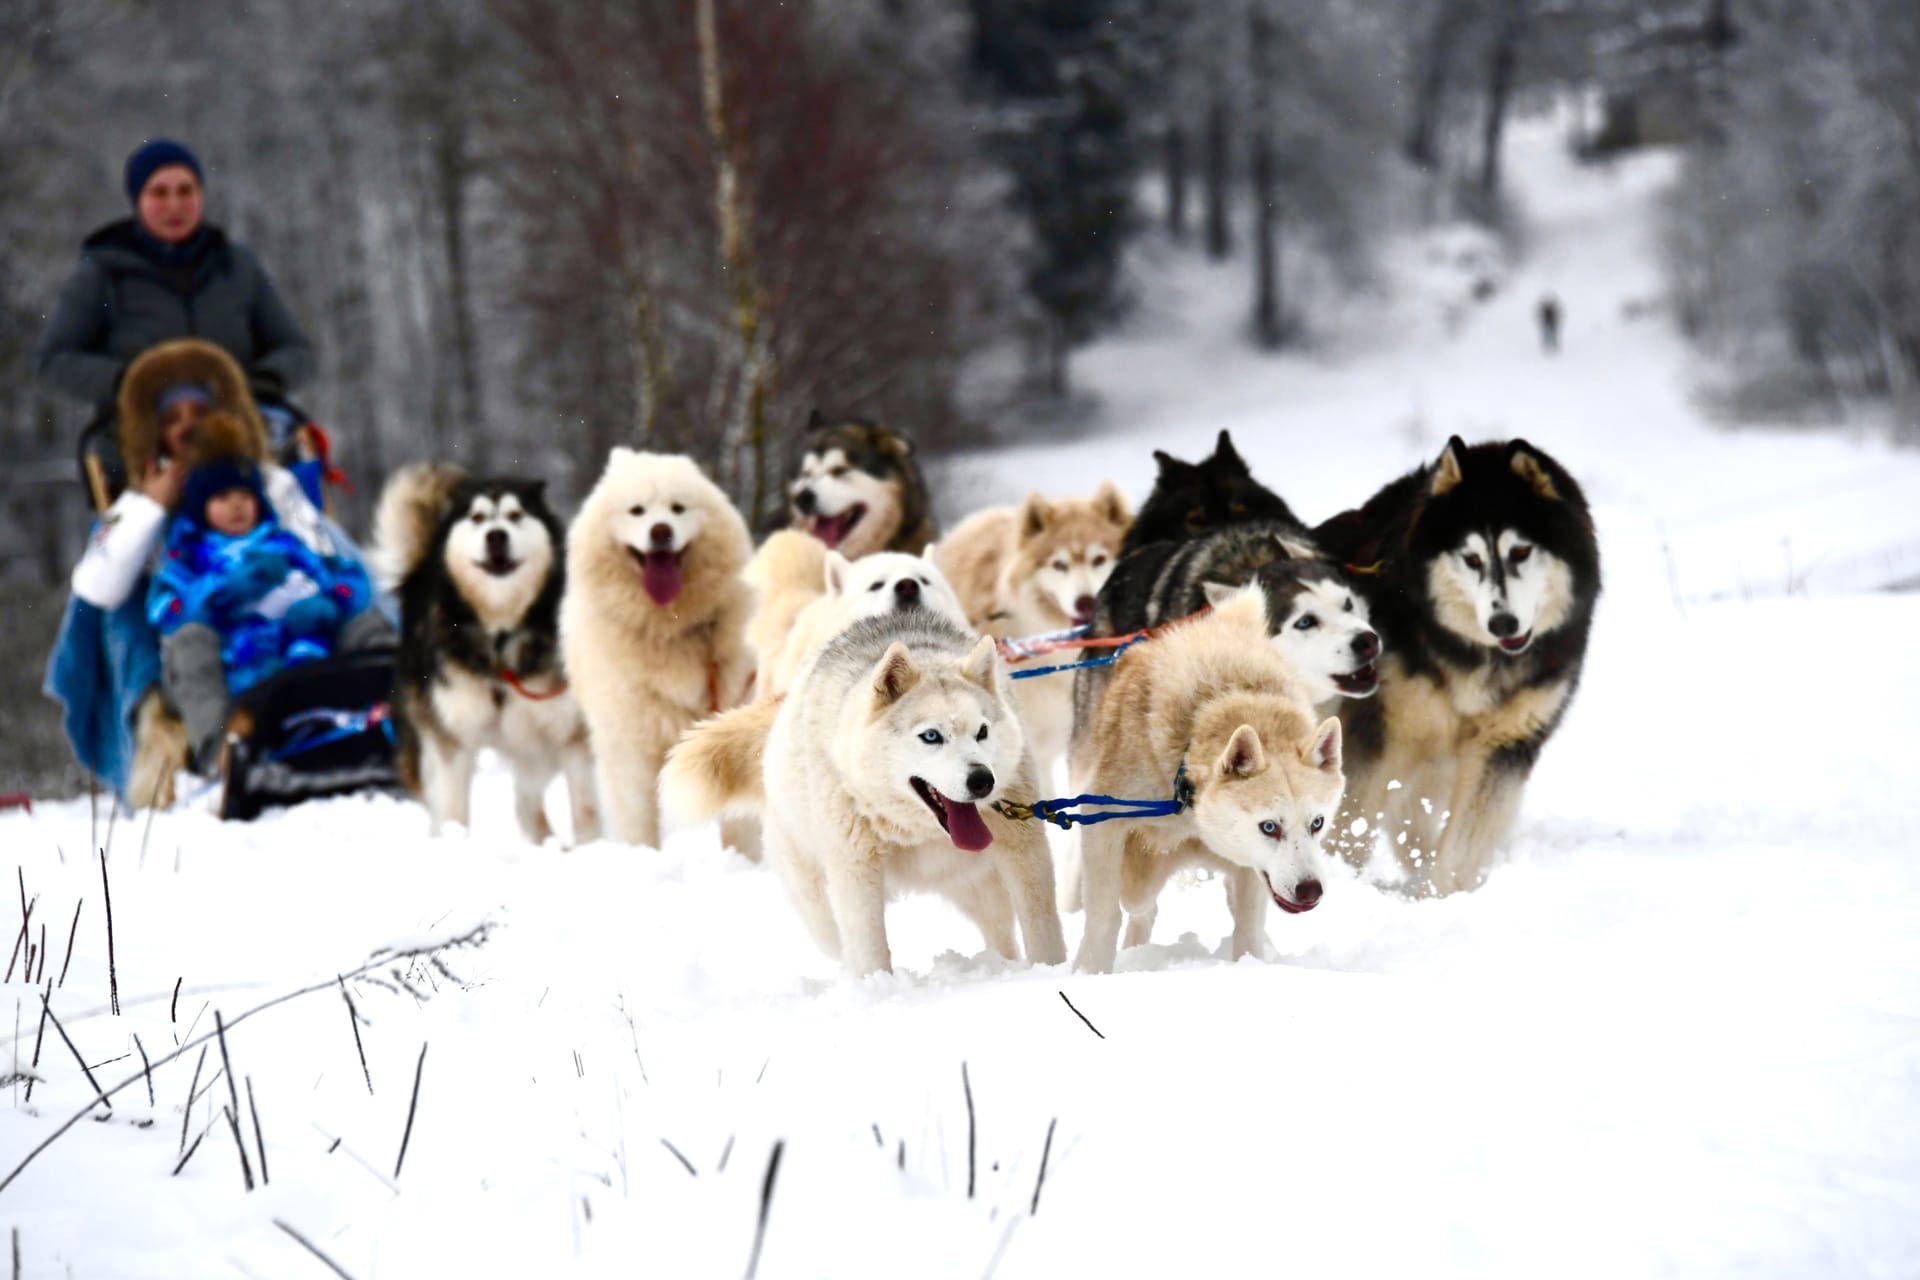 Отправиться в небольшое путешествие на собачьих упряжках — идеальное приключение для зимы